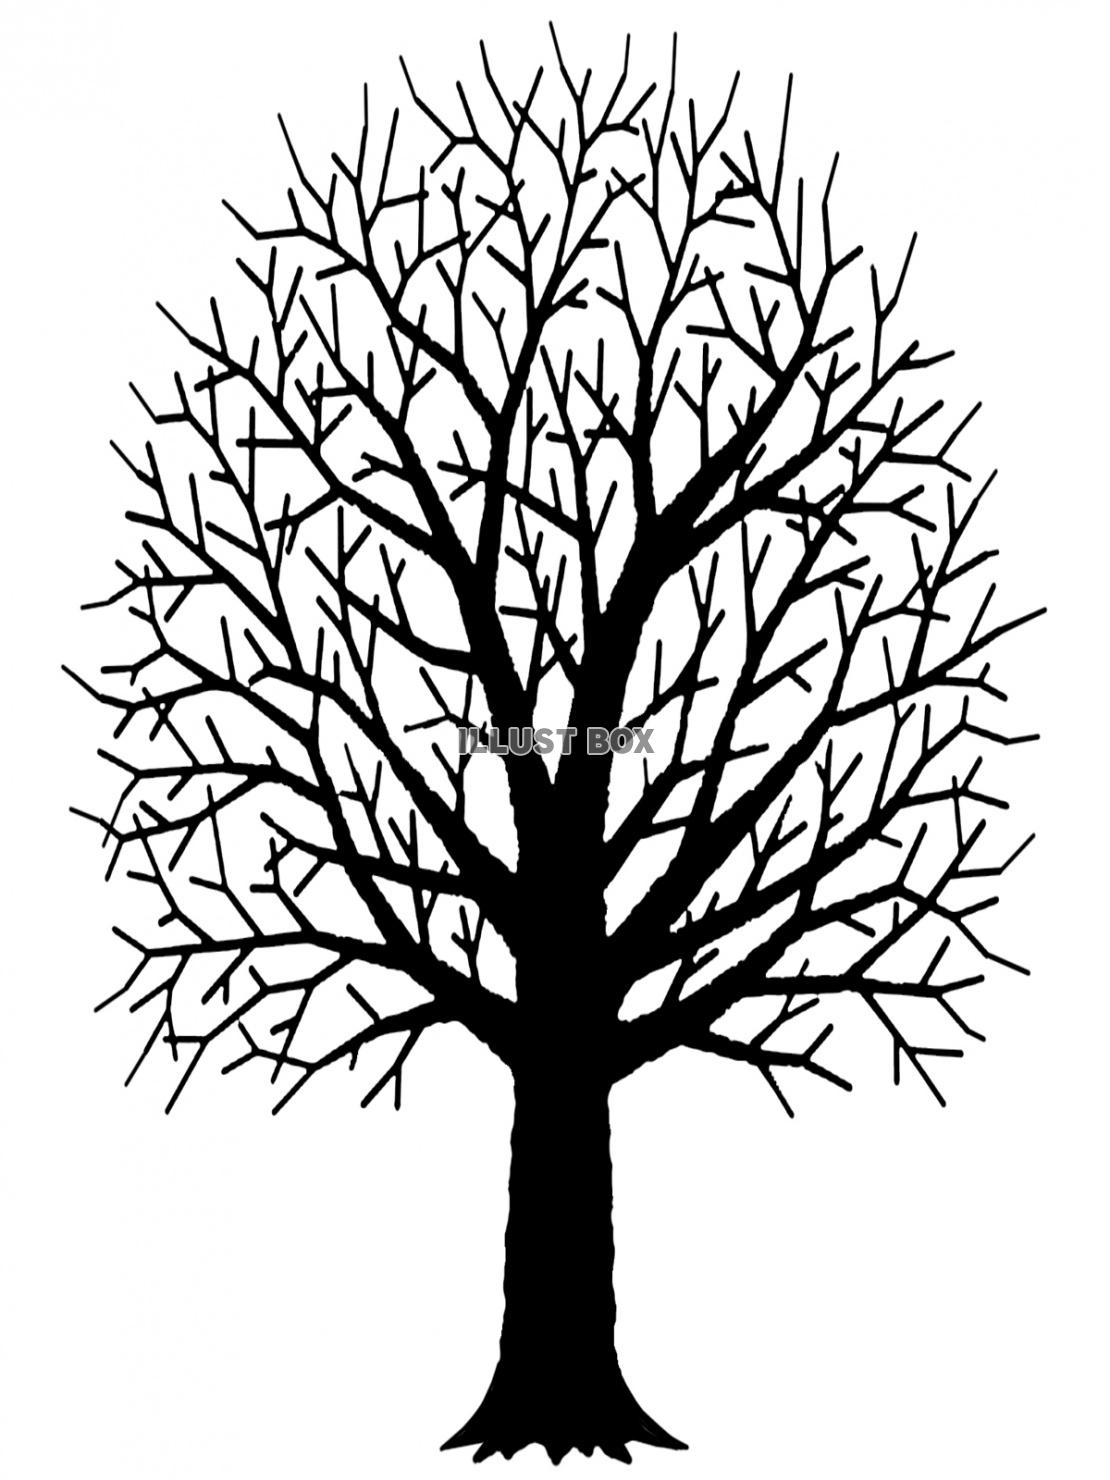 枯れ木のシルエット素材シンプル背景イラスト